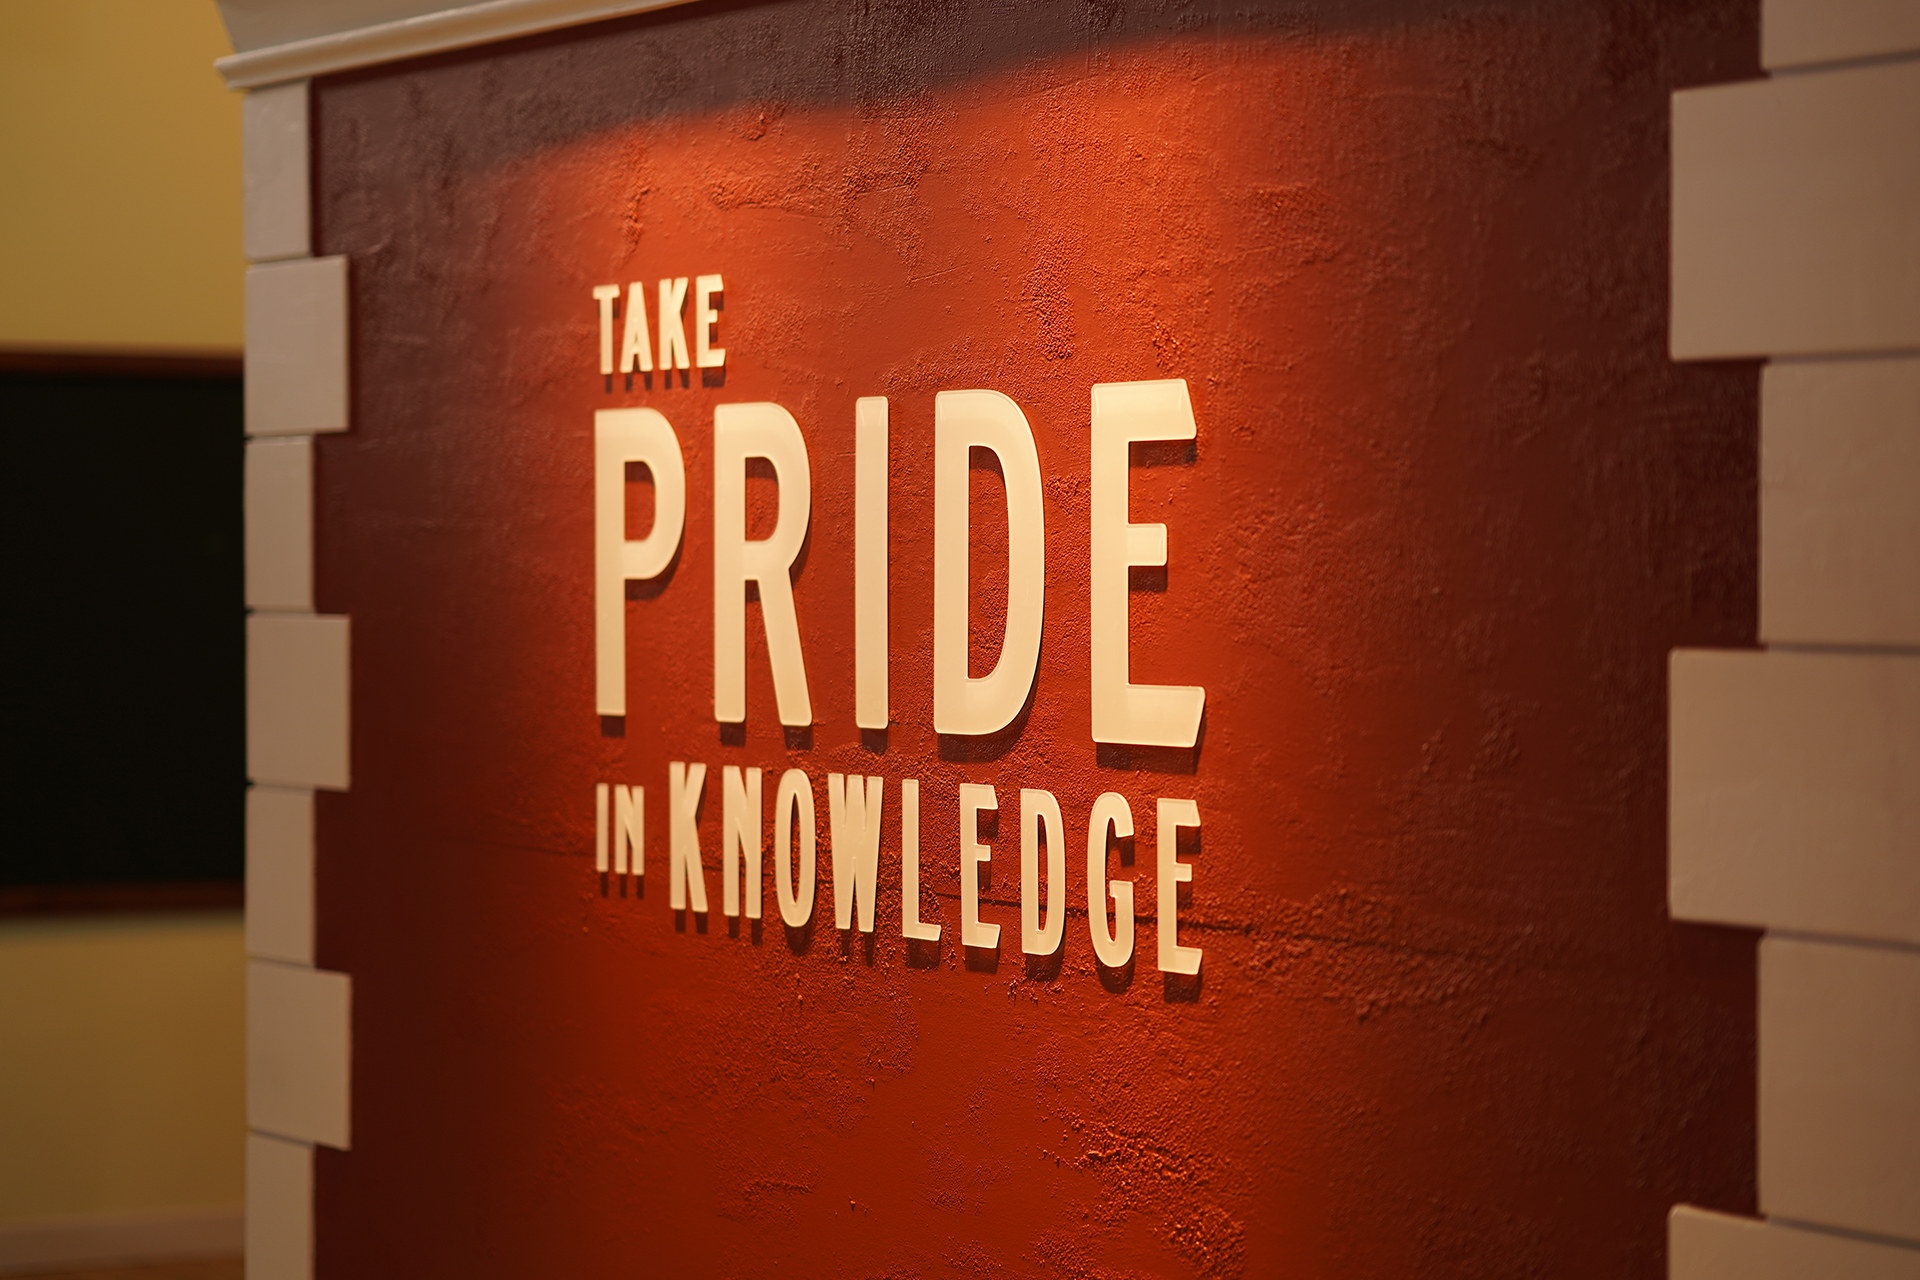 Take pride in knowledge